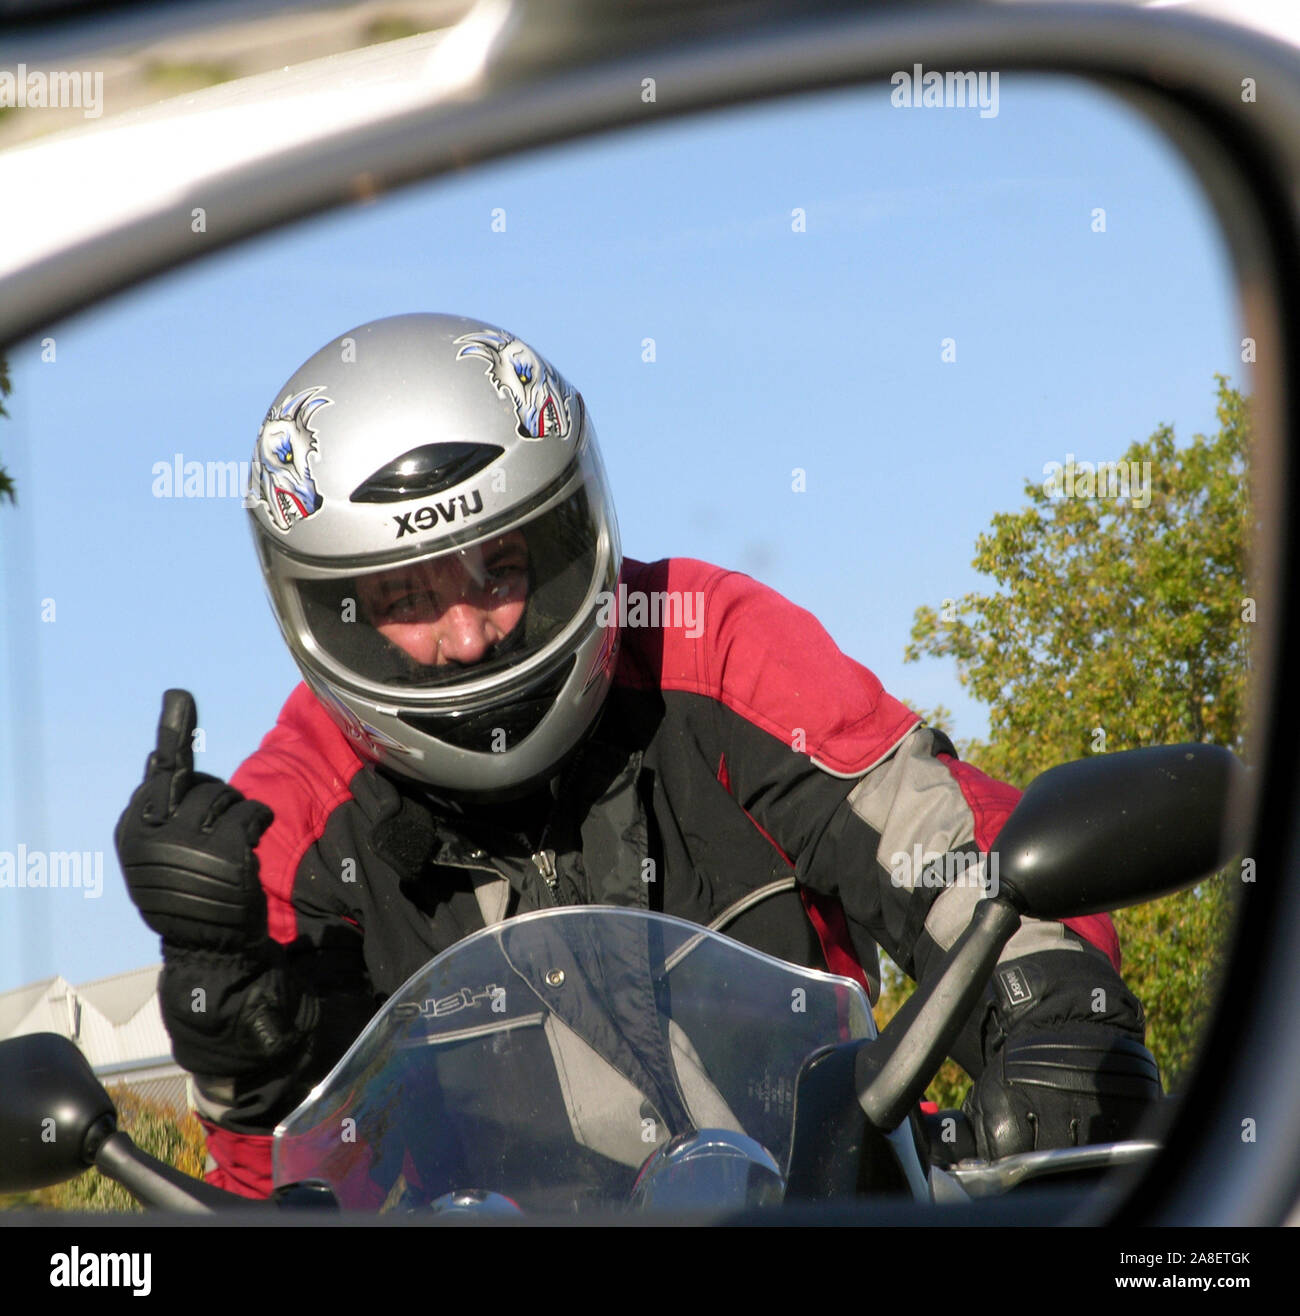 Verärgerter Motorradfahrer zeigt den Mittelfinger, Autofahrer sieht das im Spiegel seines Autos, Stock Photo